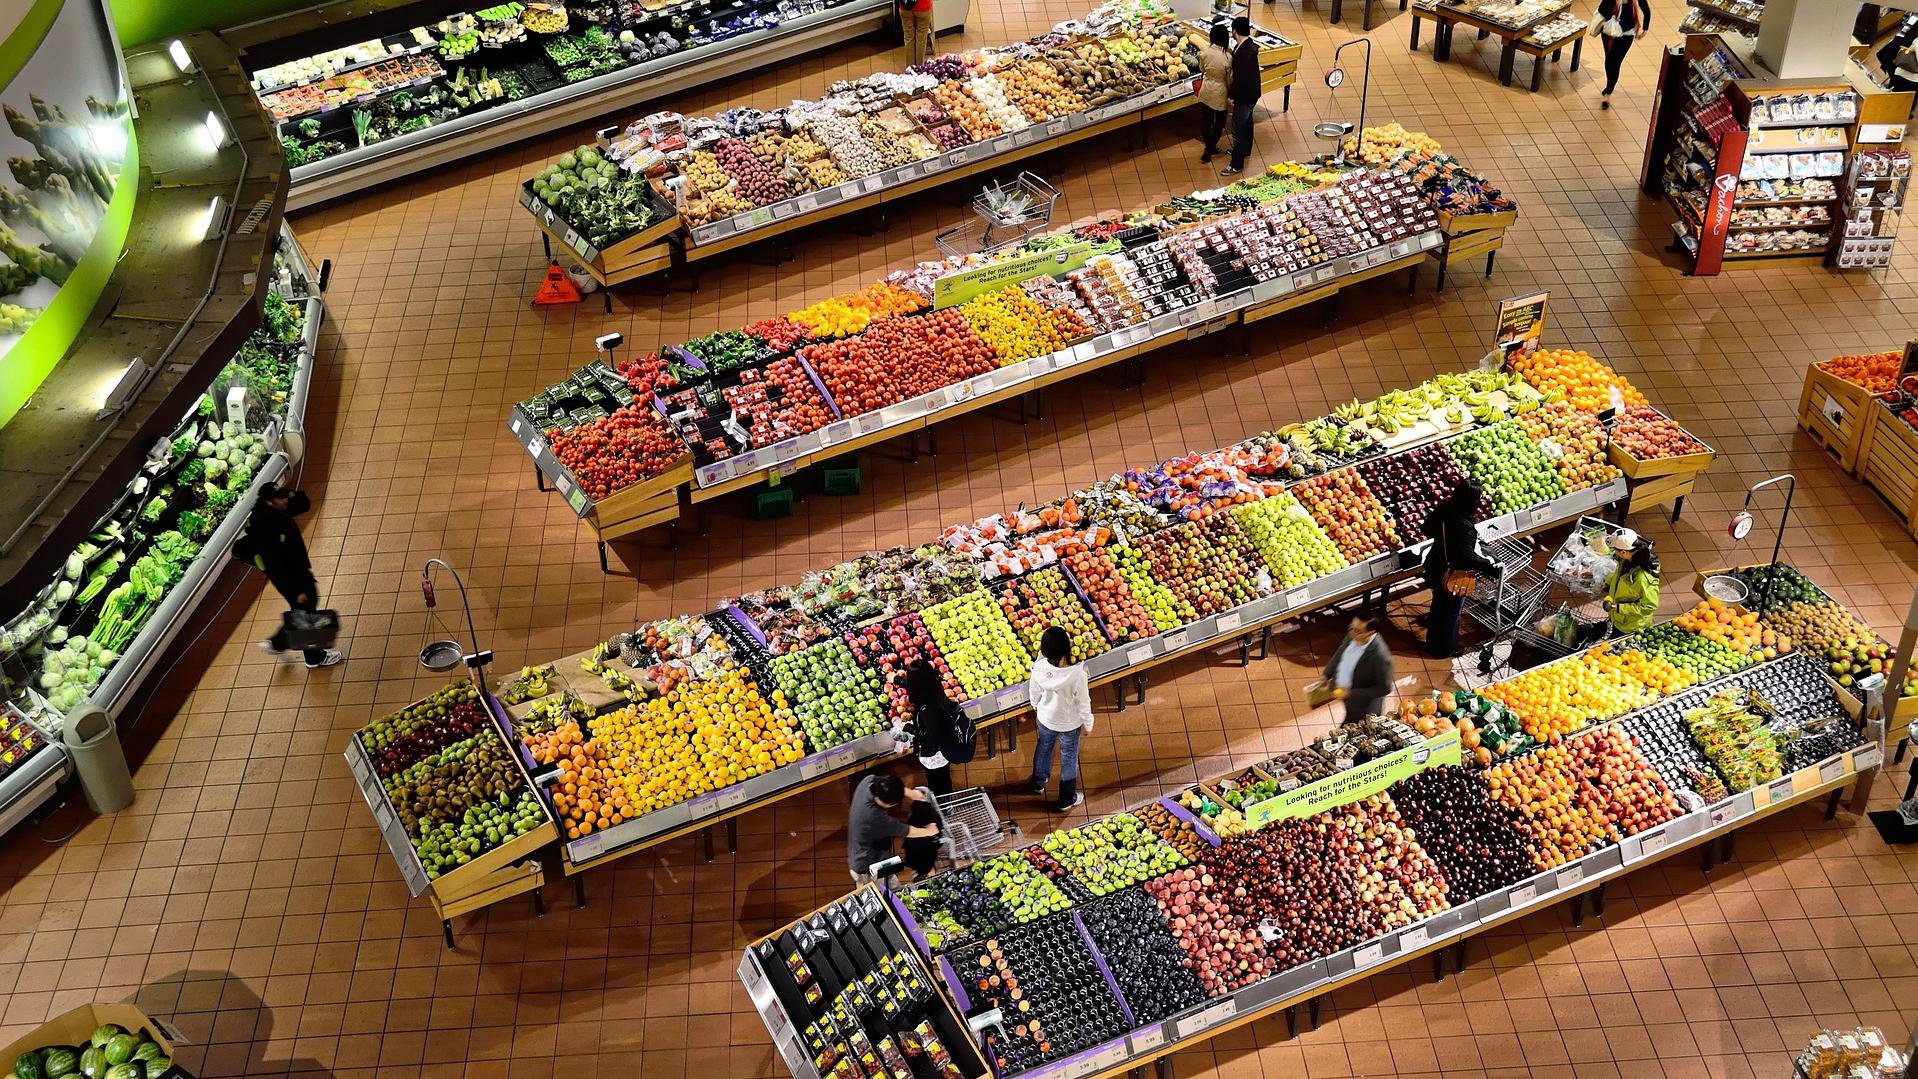 Stimmungsbild zum Beitrag: Es wird aus der Vogelperspektive ein Gemüse- und Obstbereich in einem großen Supermarkt abgebildet.